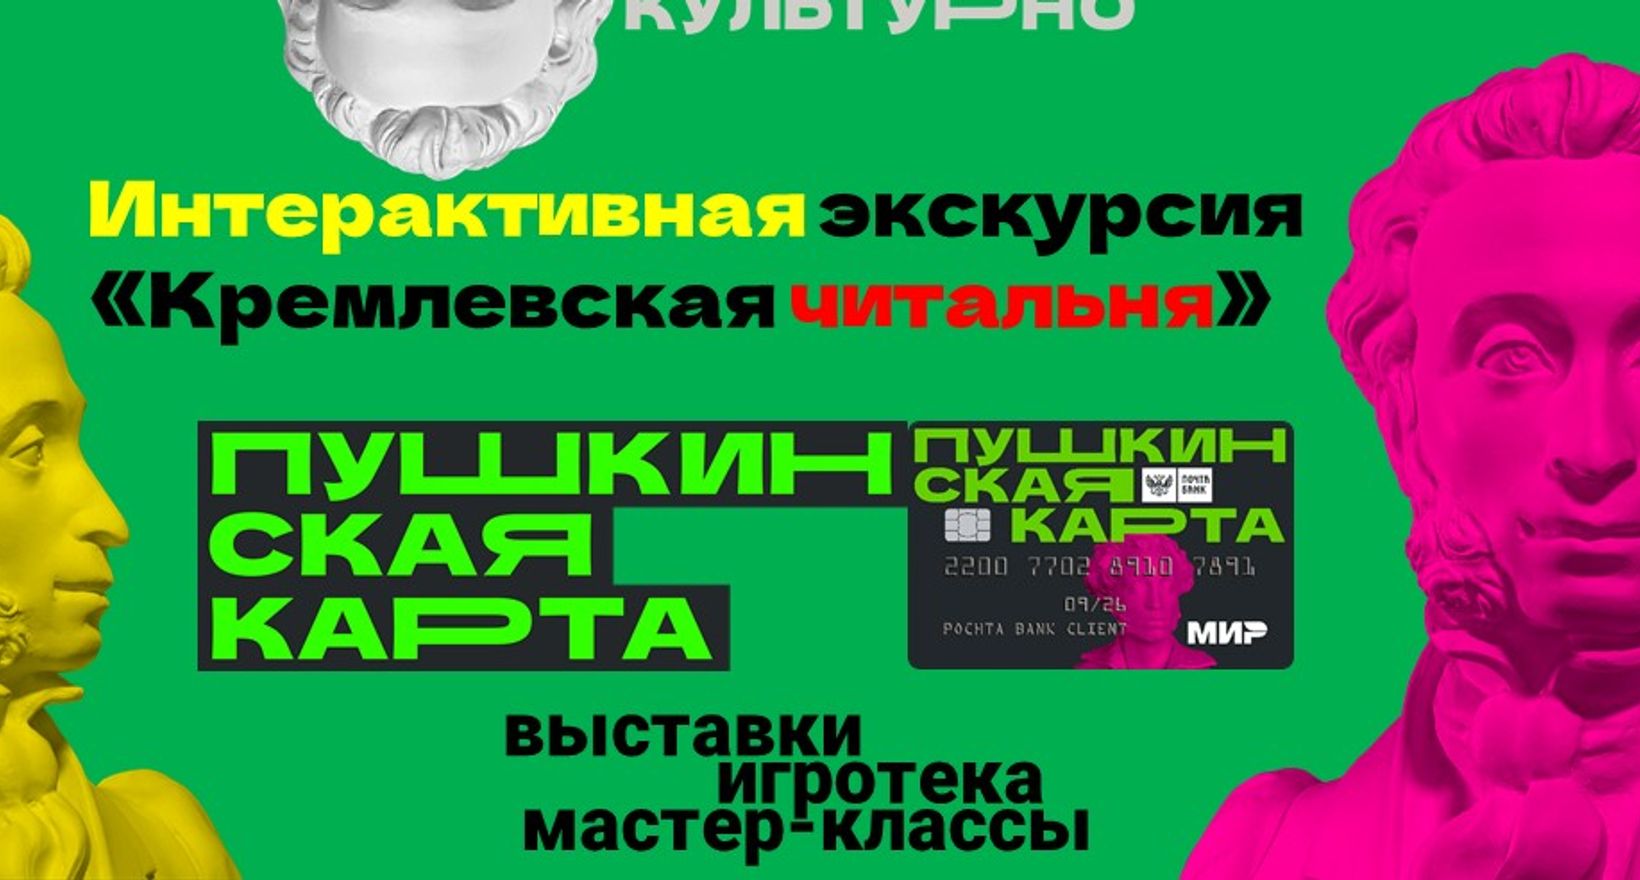 Интерактивная экскурсия "Кремлевская читальня"